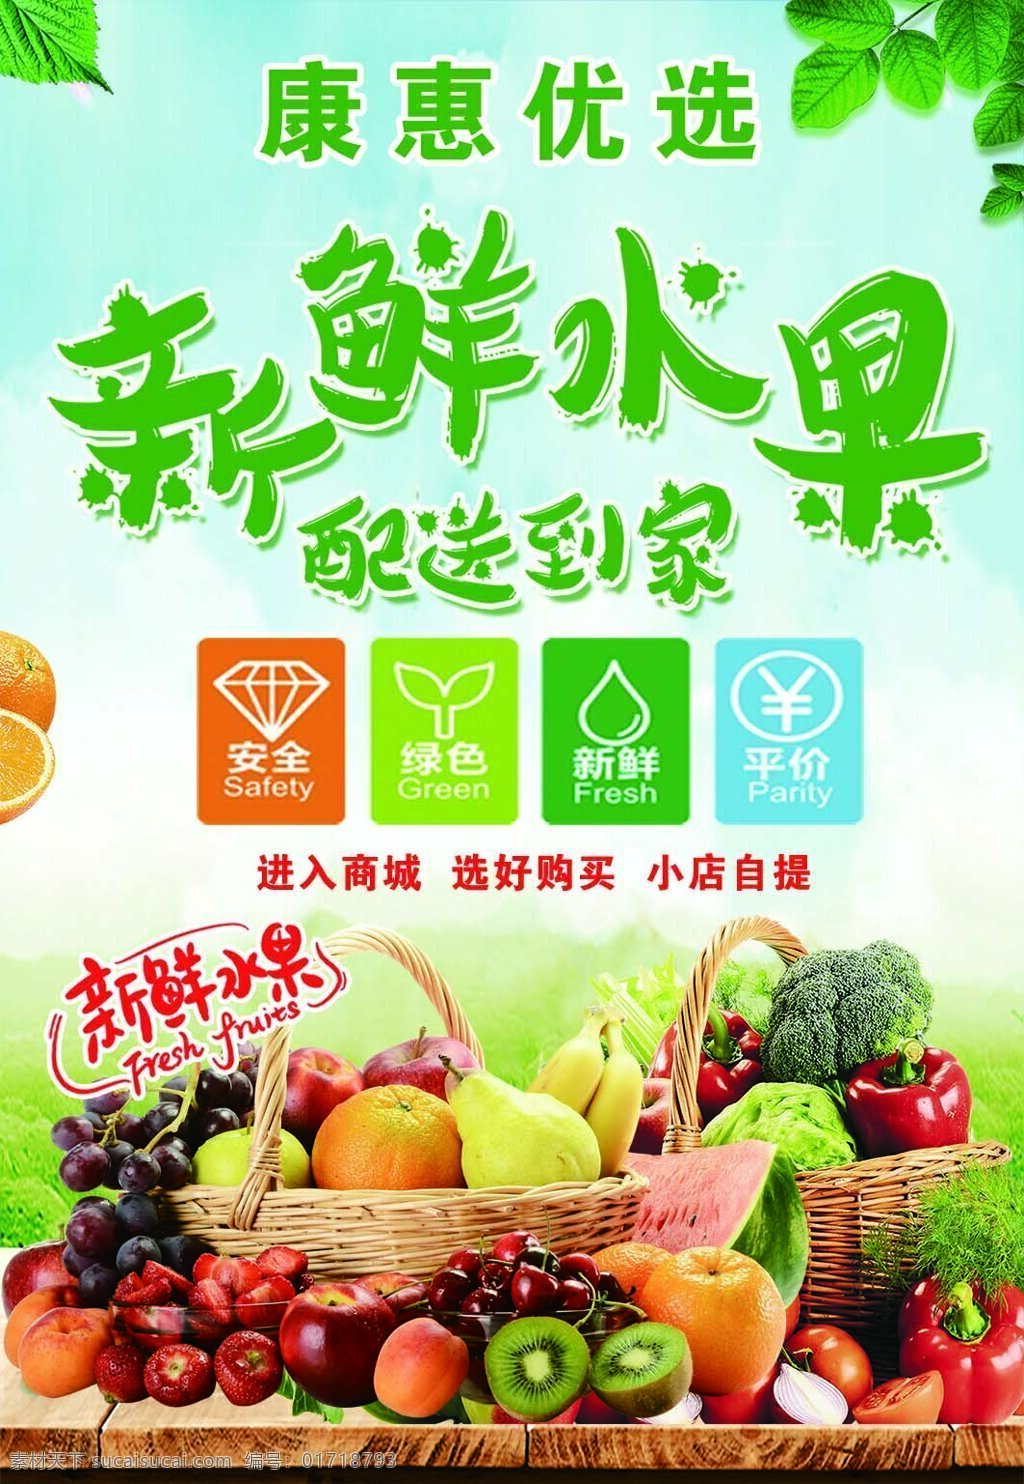 新鲜水果图片 水果广告 新鲜水果 环保绿色 蔬菜 健康绿色食品 矢量图